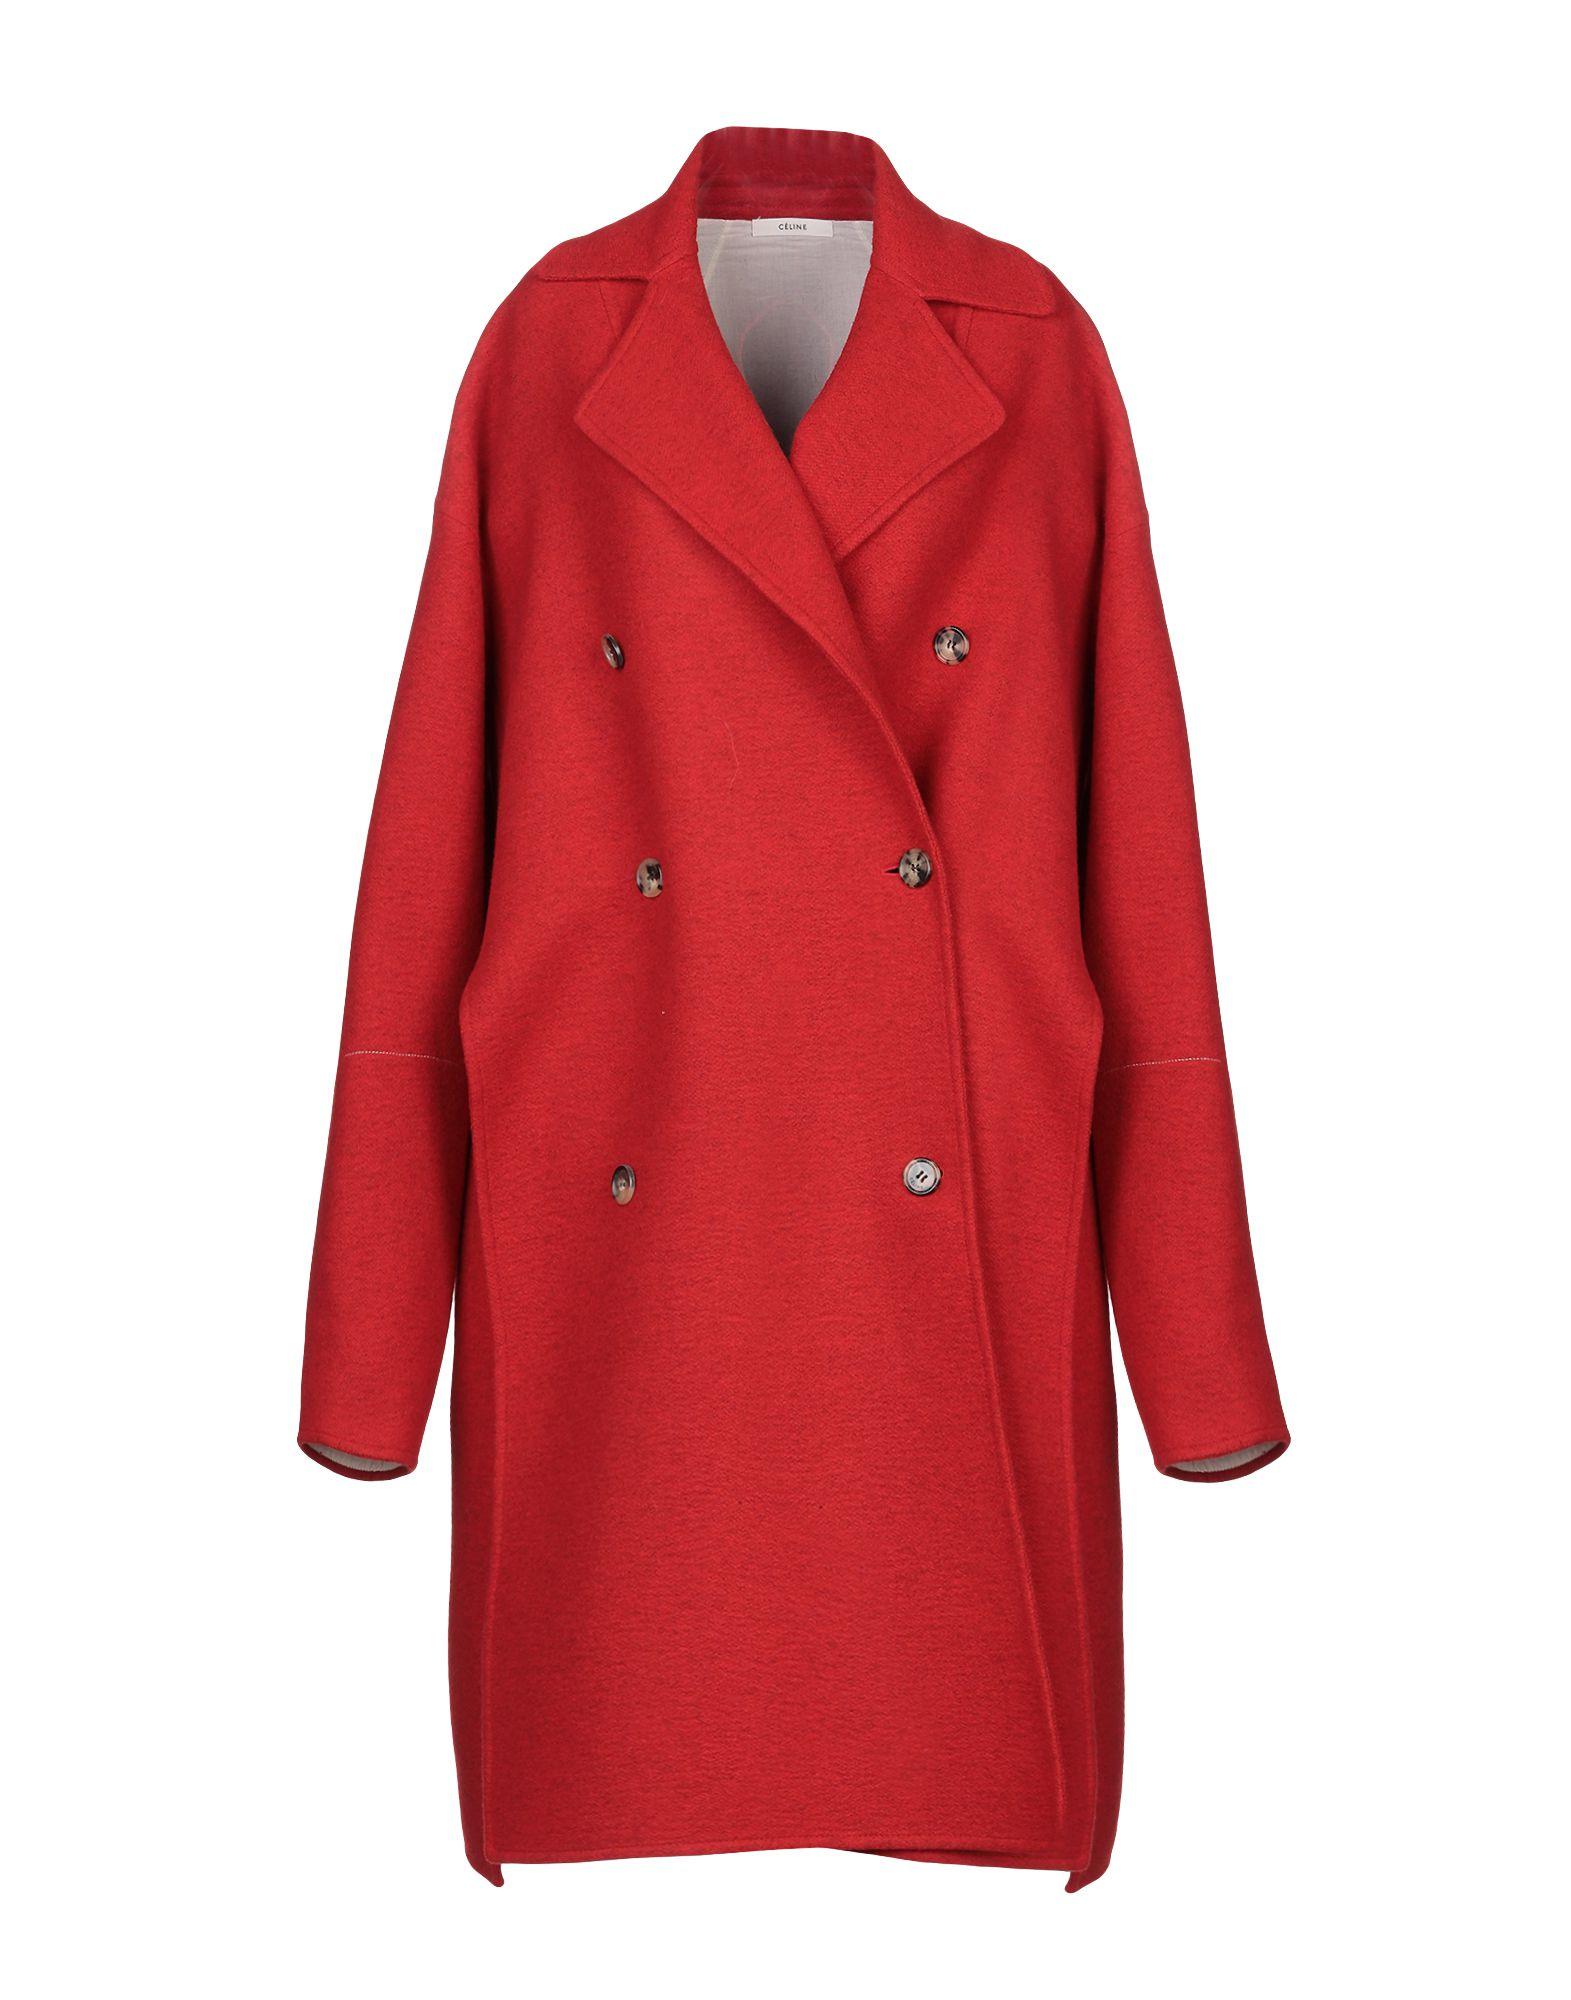 Céline Wool Coat in Red - Lyst